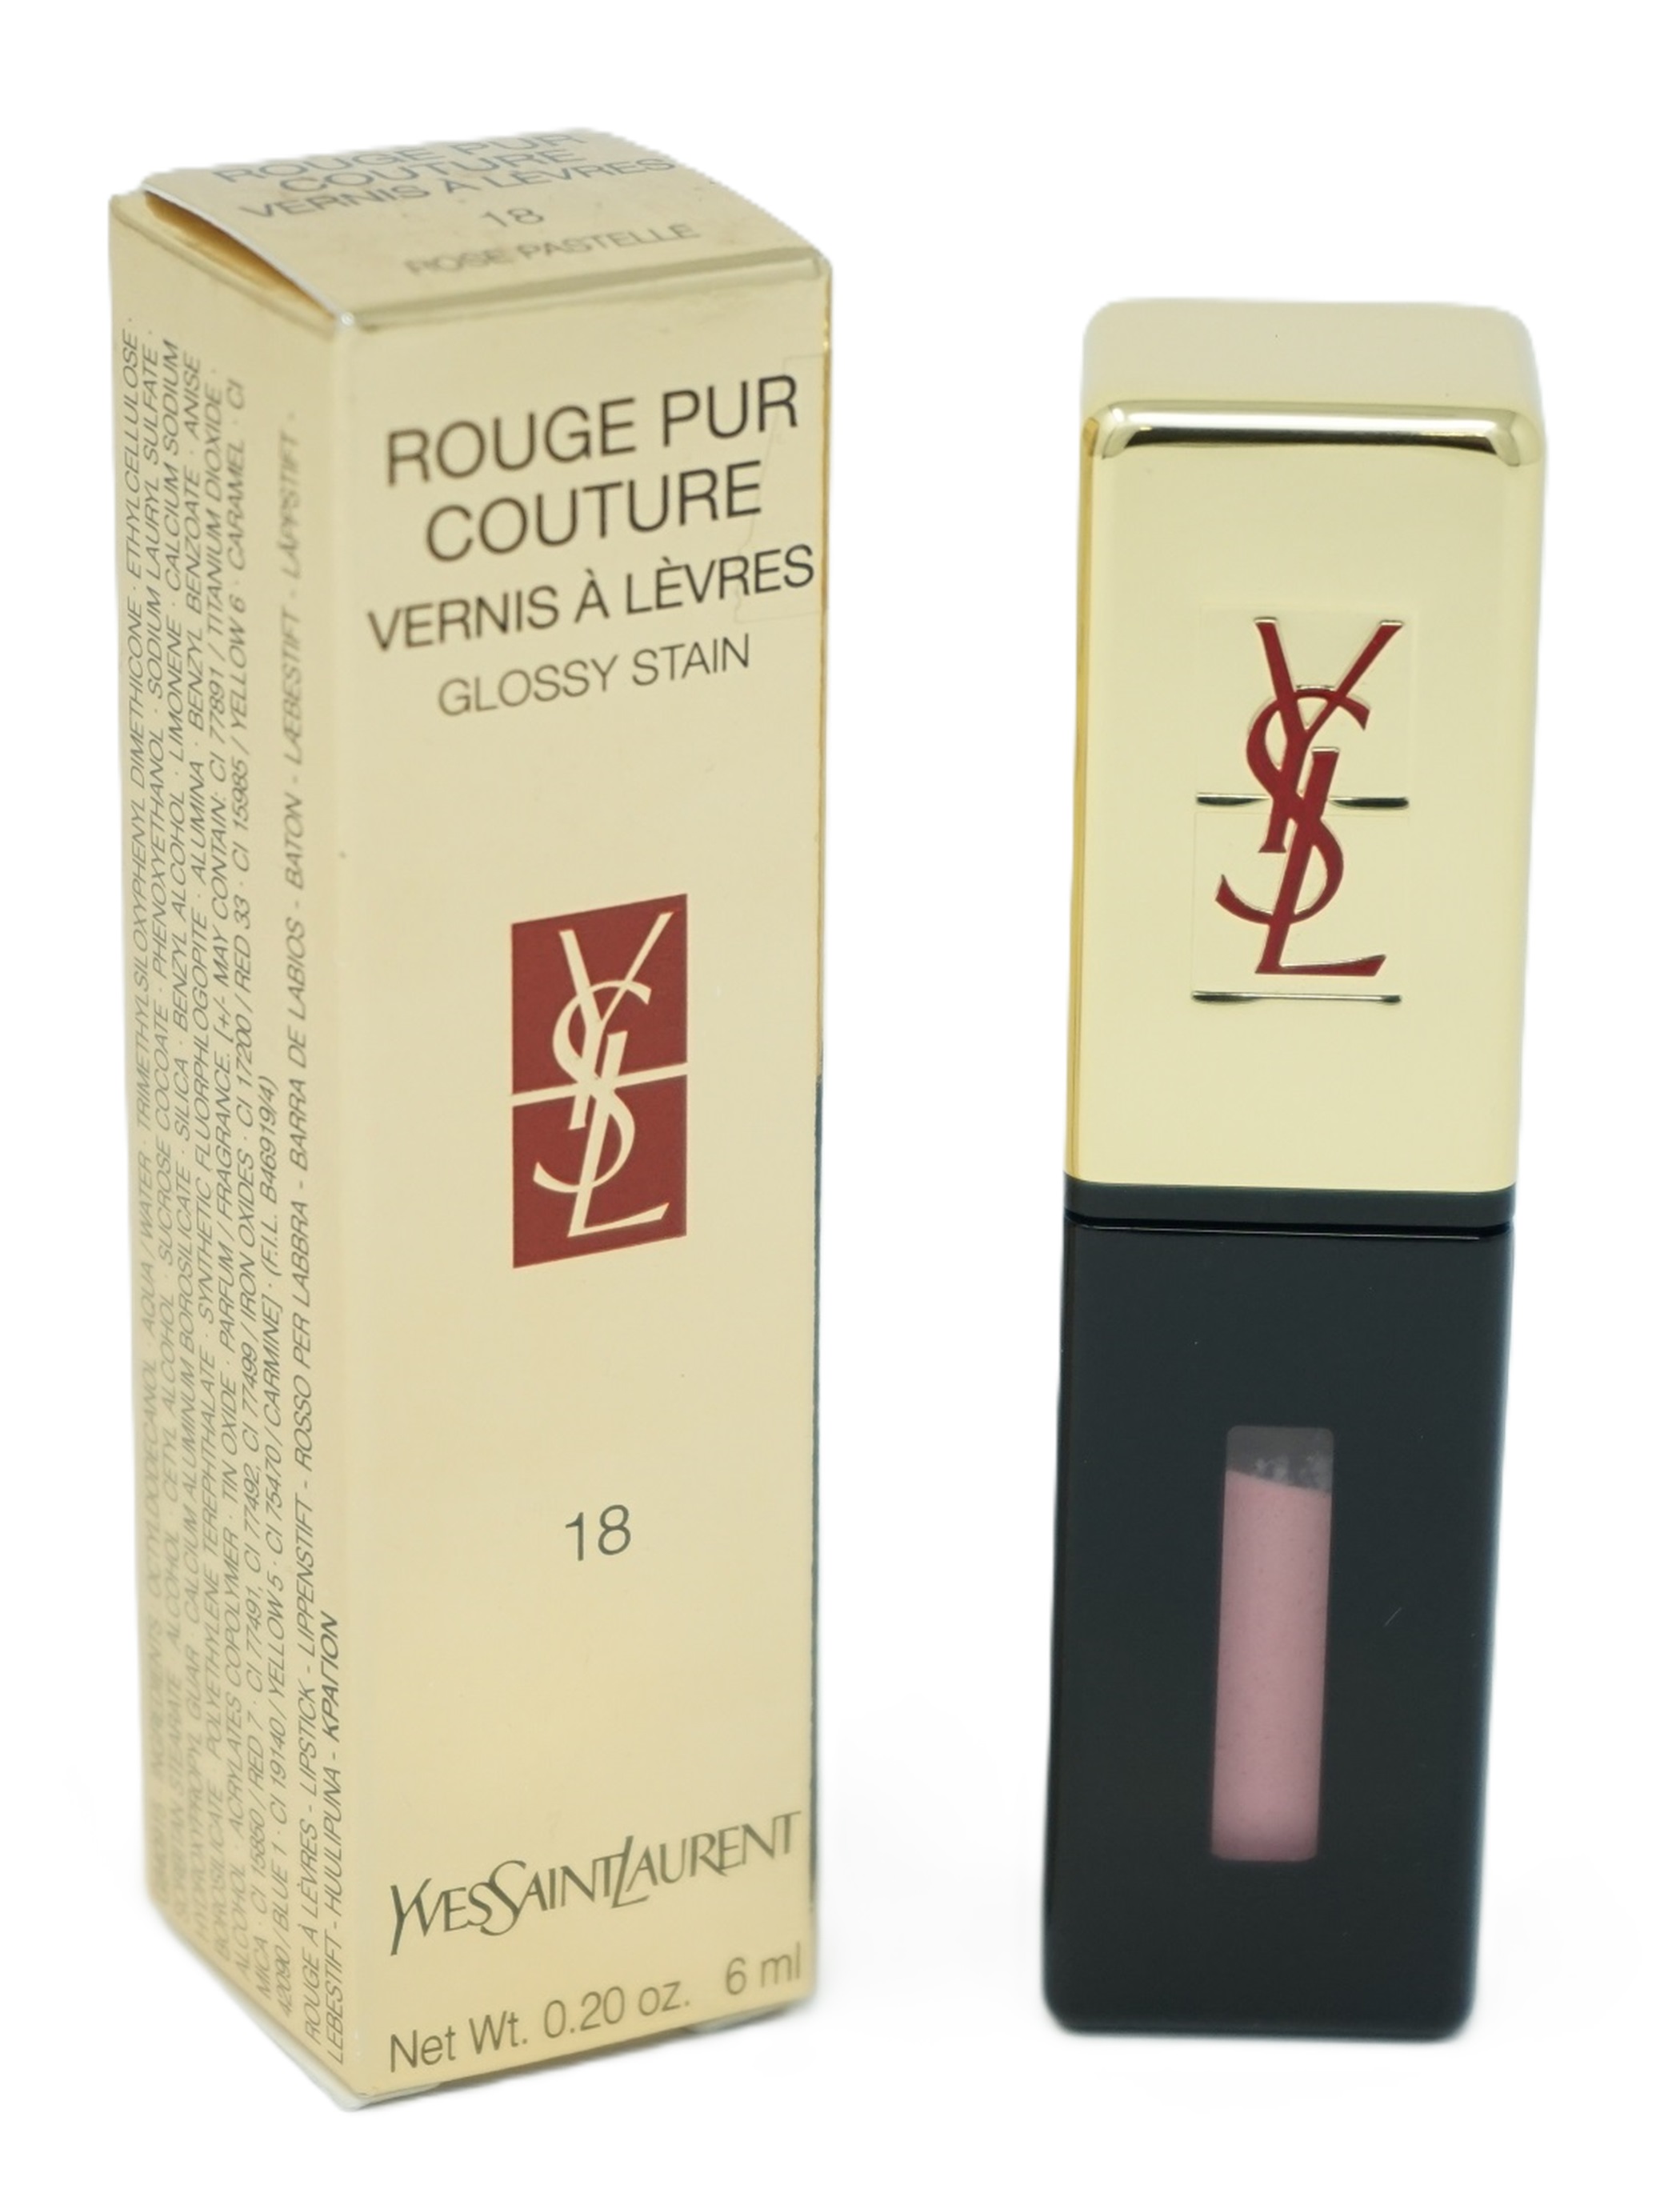 Yves Saint Laurent Rouge pur Couture Vernis á Levres Lippenstift 18 Rose Pastelle